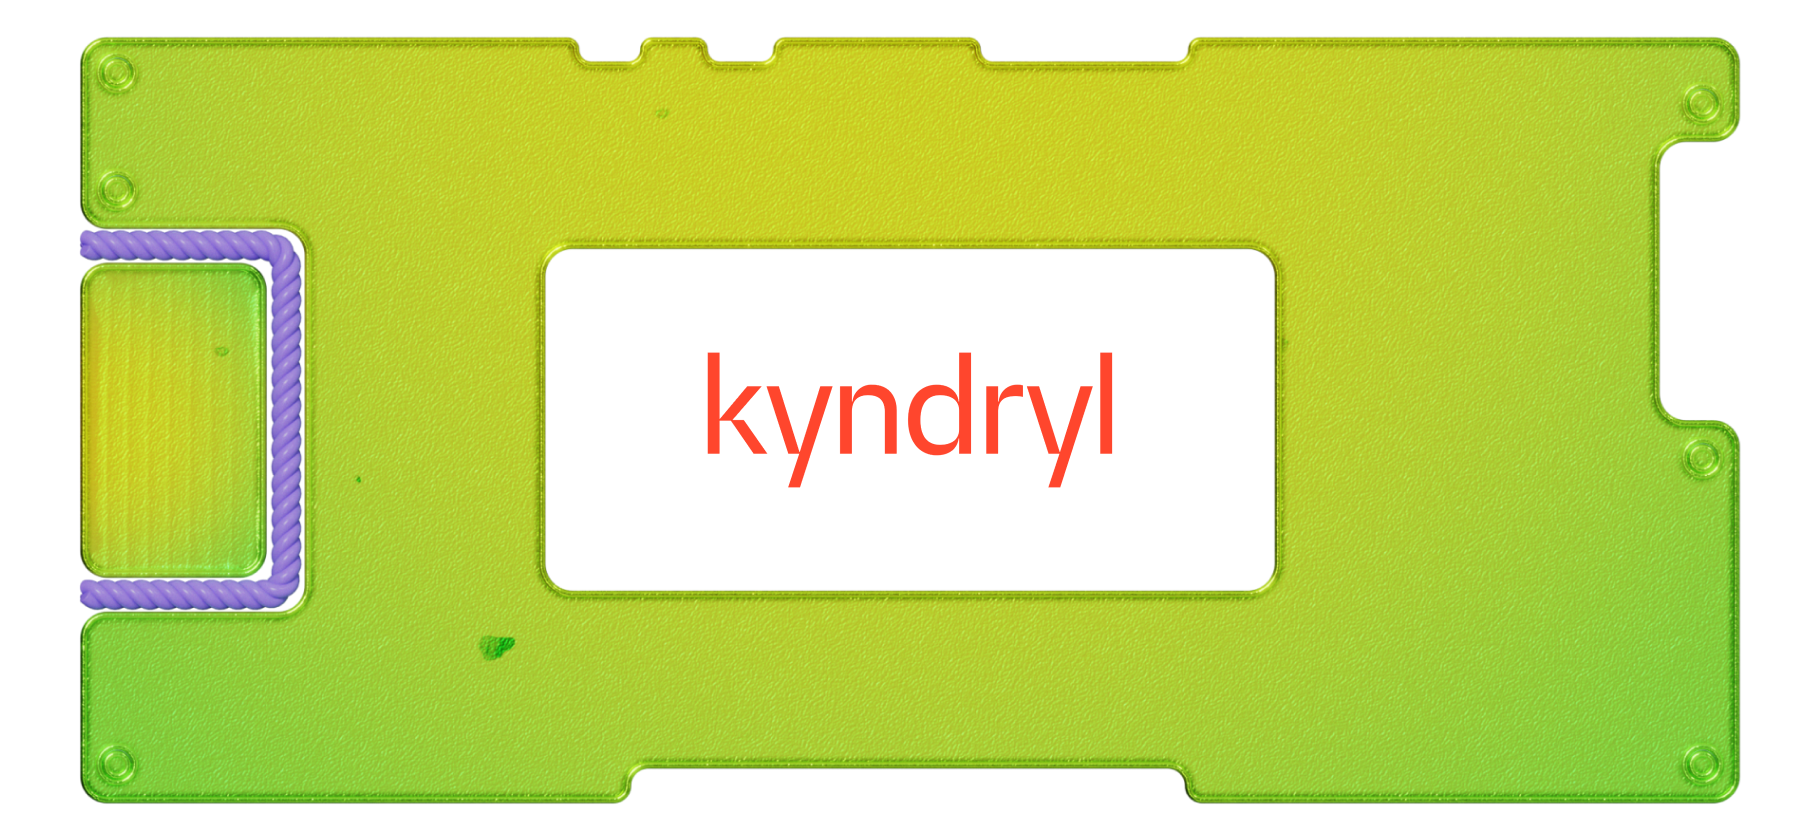 Обзор Kyndryl: консалтинговое подразделение IBM покинуло гнездо